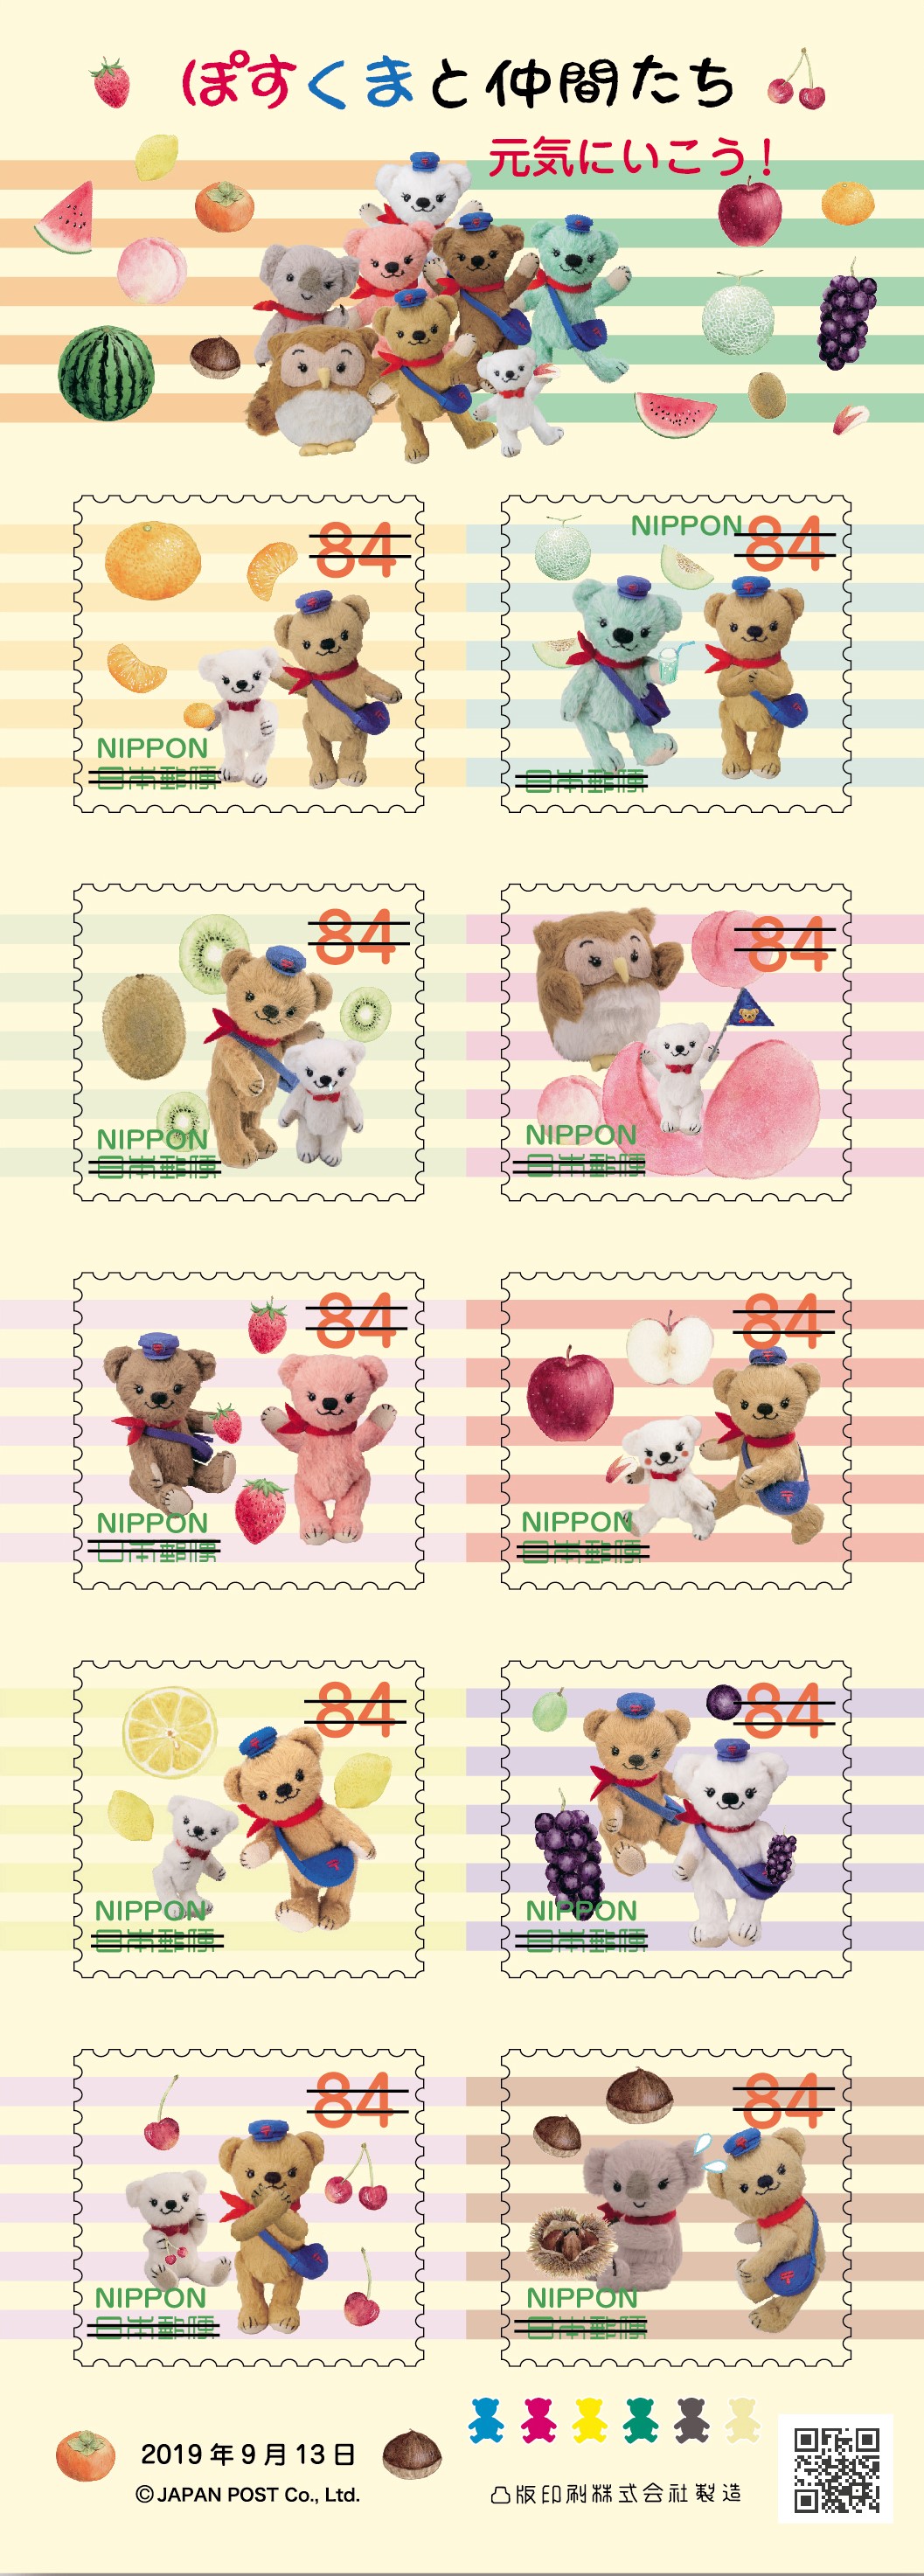 切手特集 みんな大好き 話題のキャラクター切手大集合 日本郵便株式会社